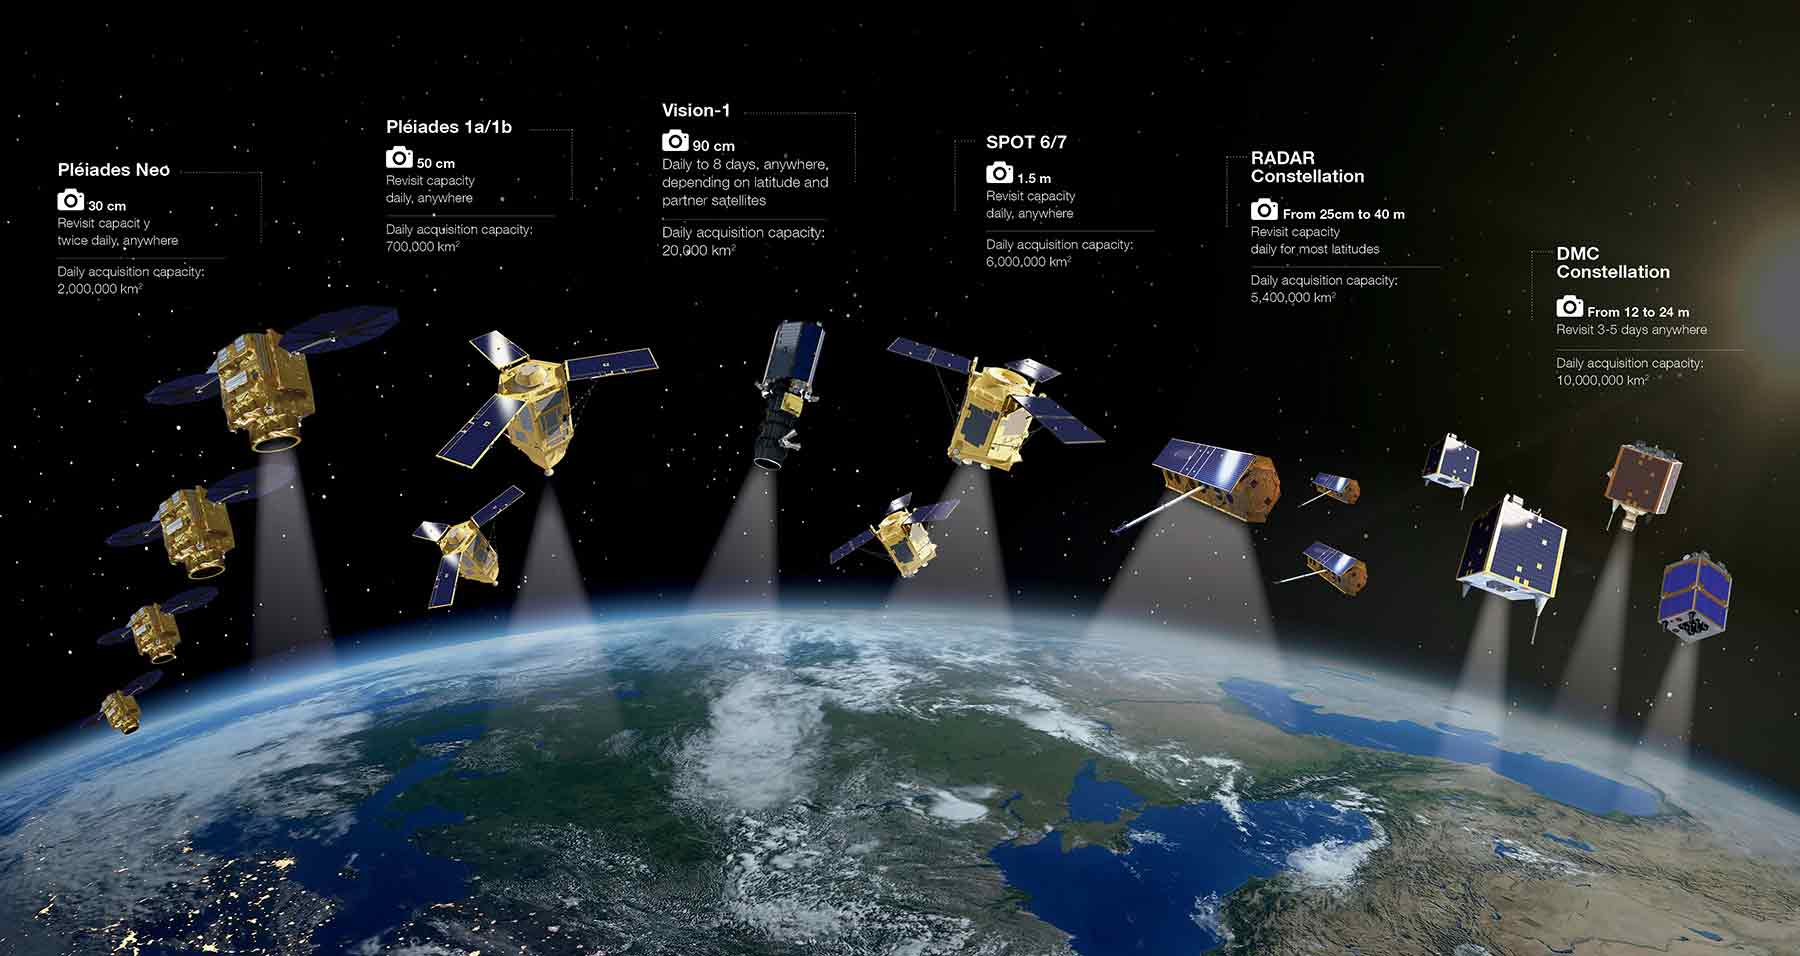 Airbus Satellitenkonstellation zur Erdbeobachtung als Beispiel